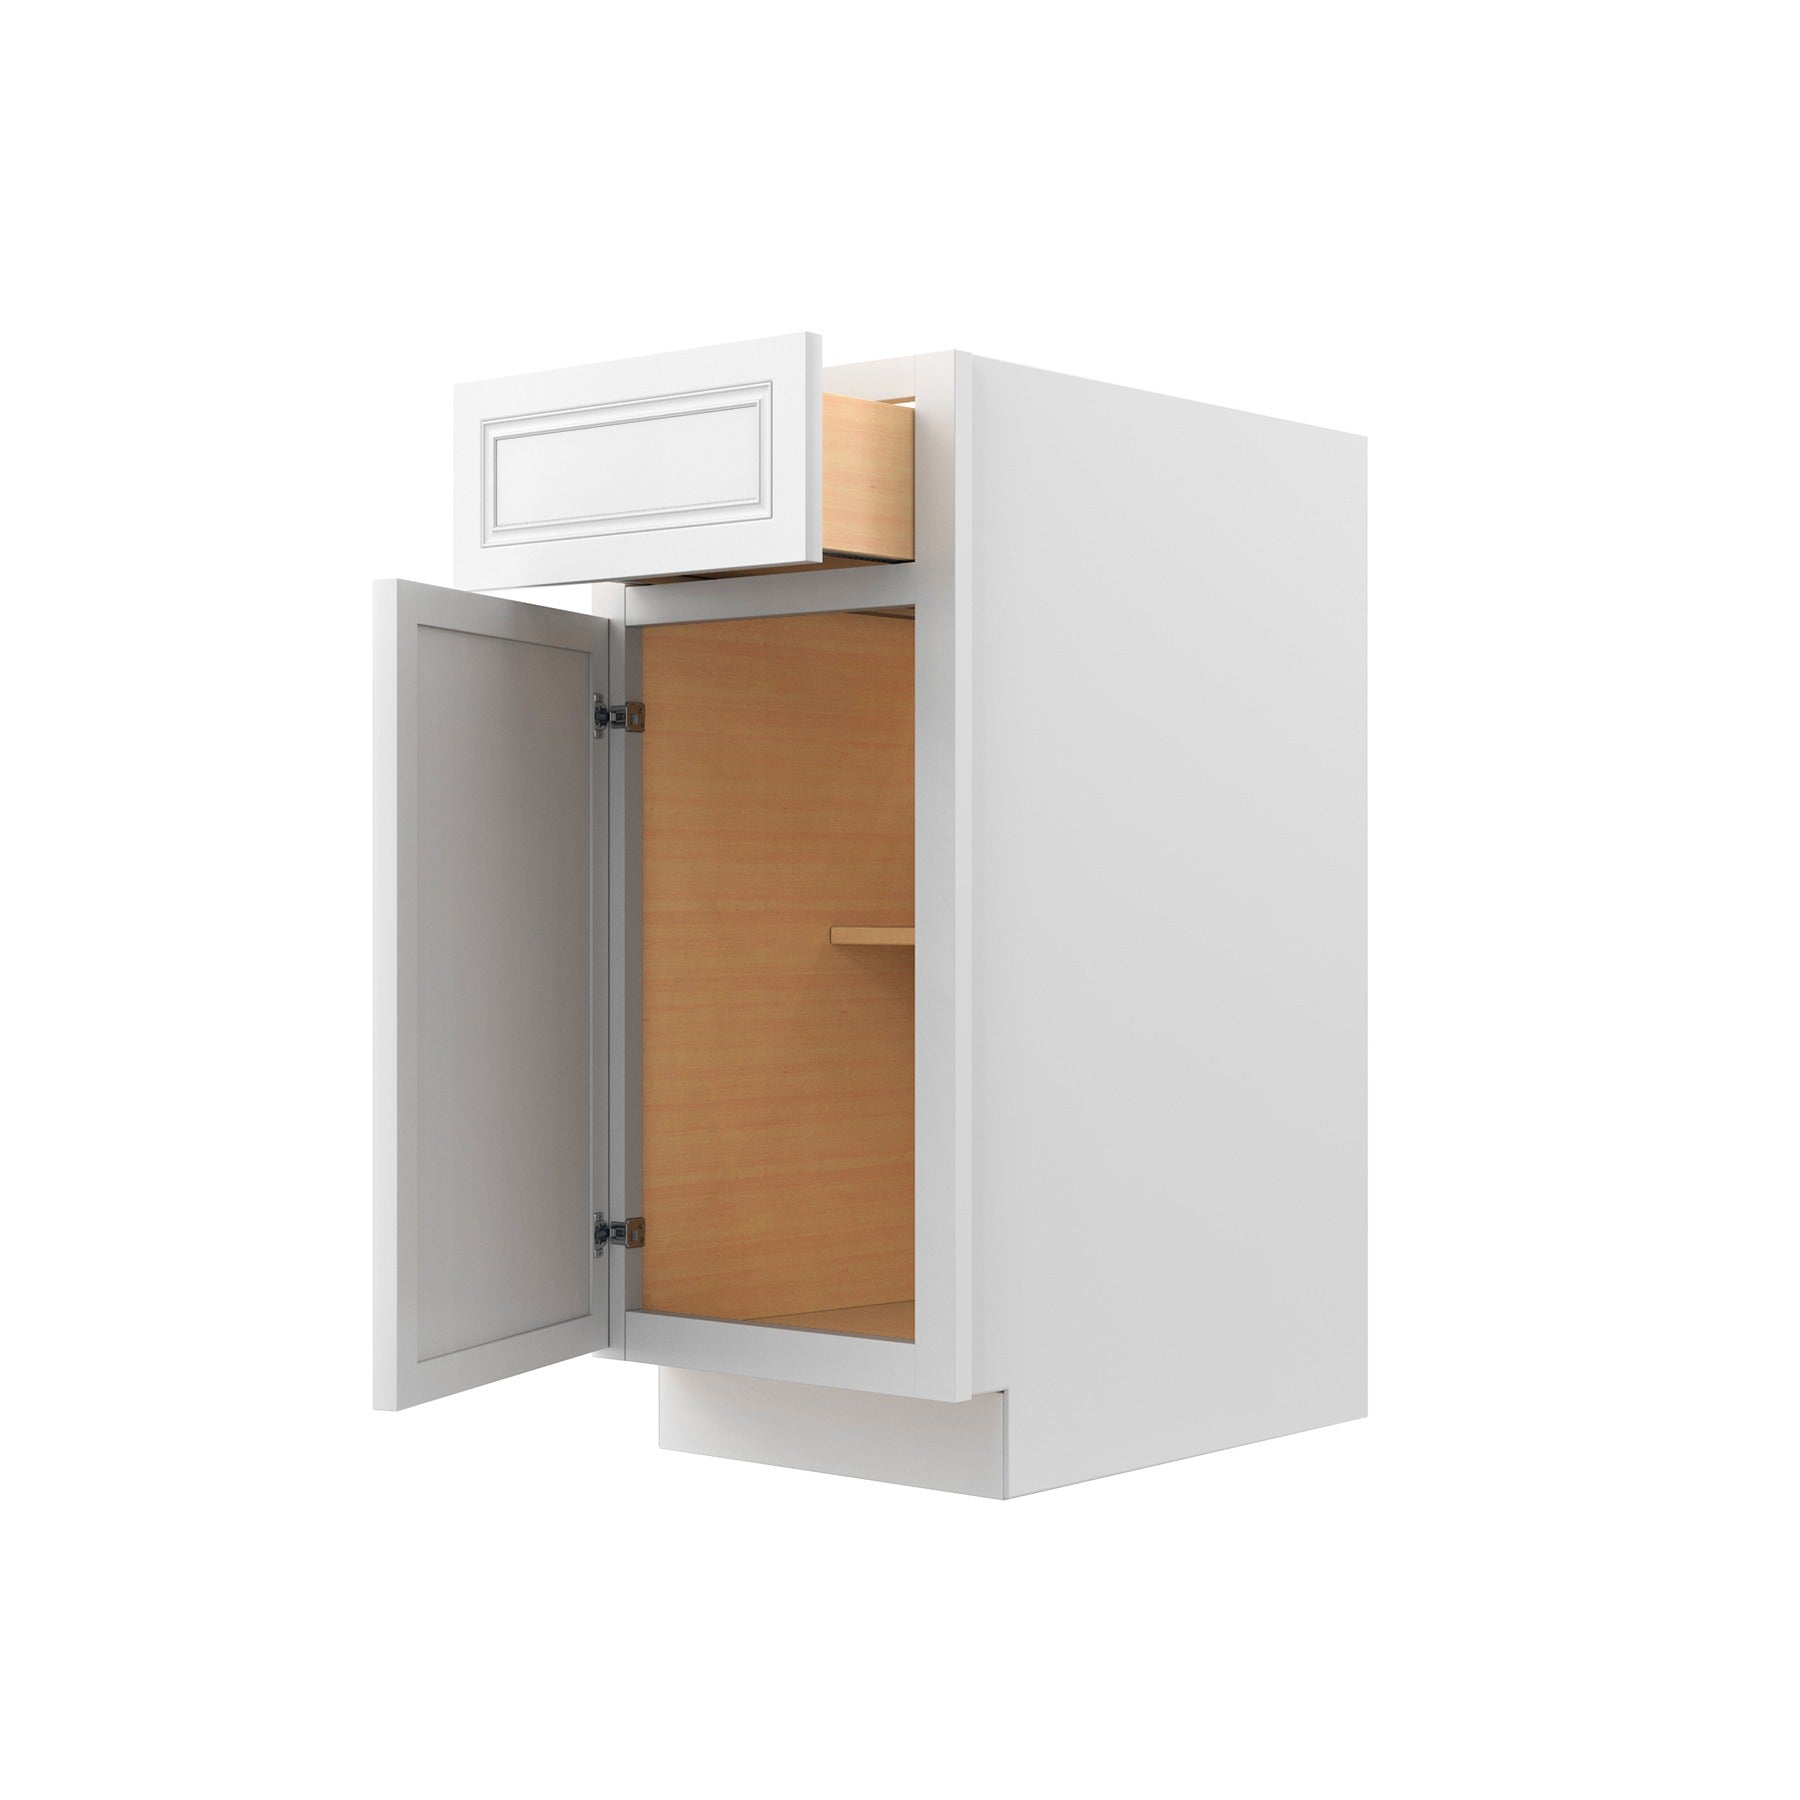 Park Avenue White - Single Door Base Cabinet | 15"W x 34.5"H x 24"D